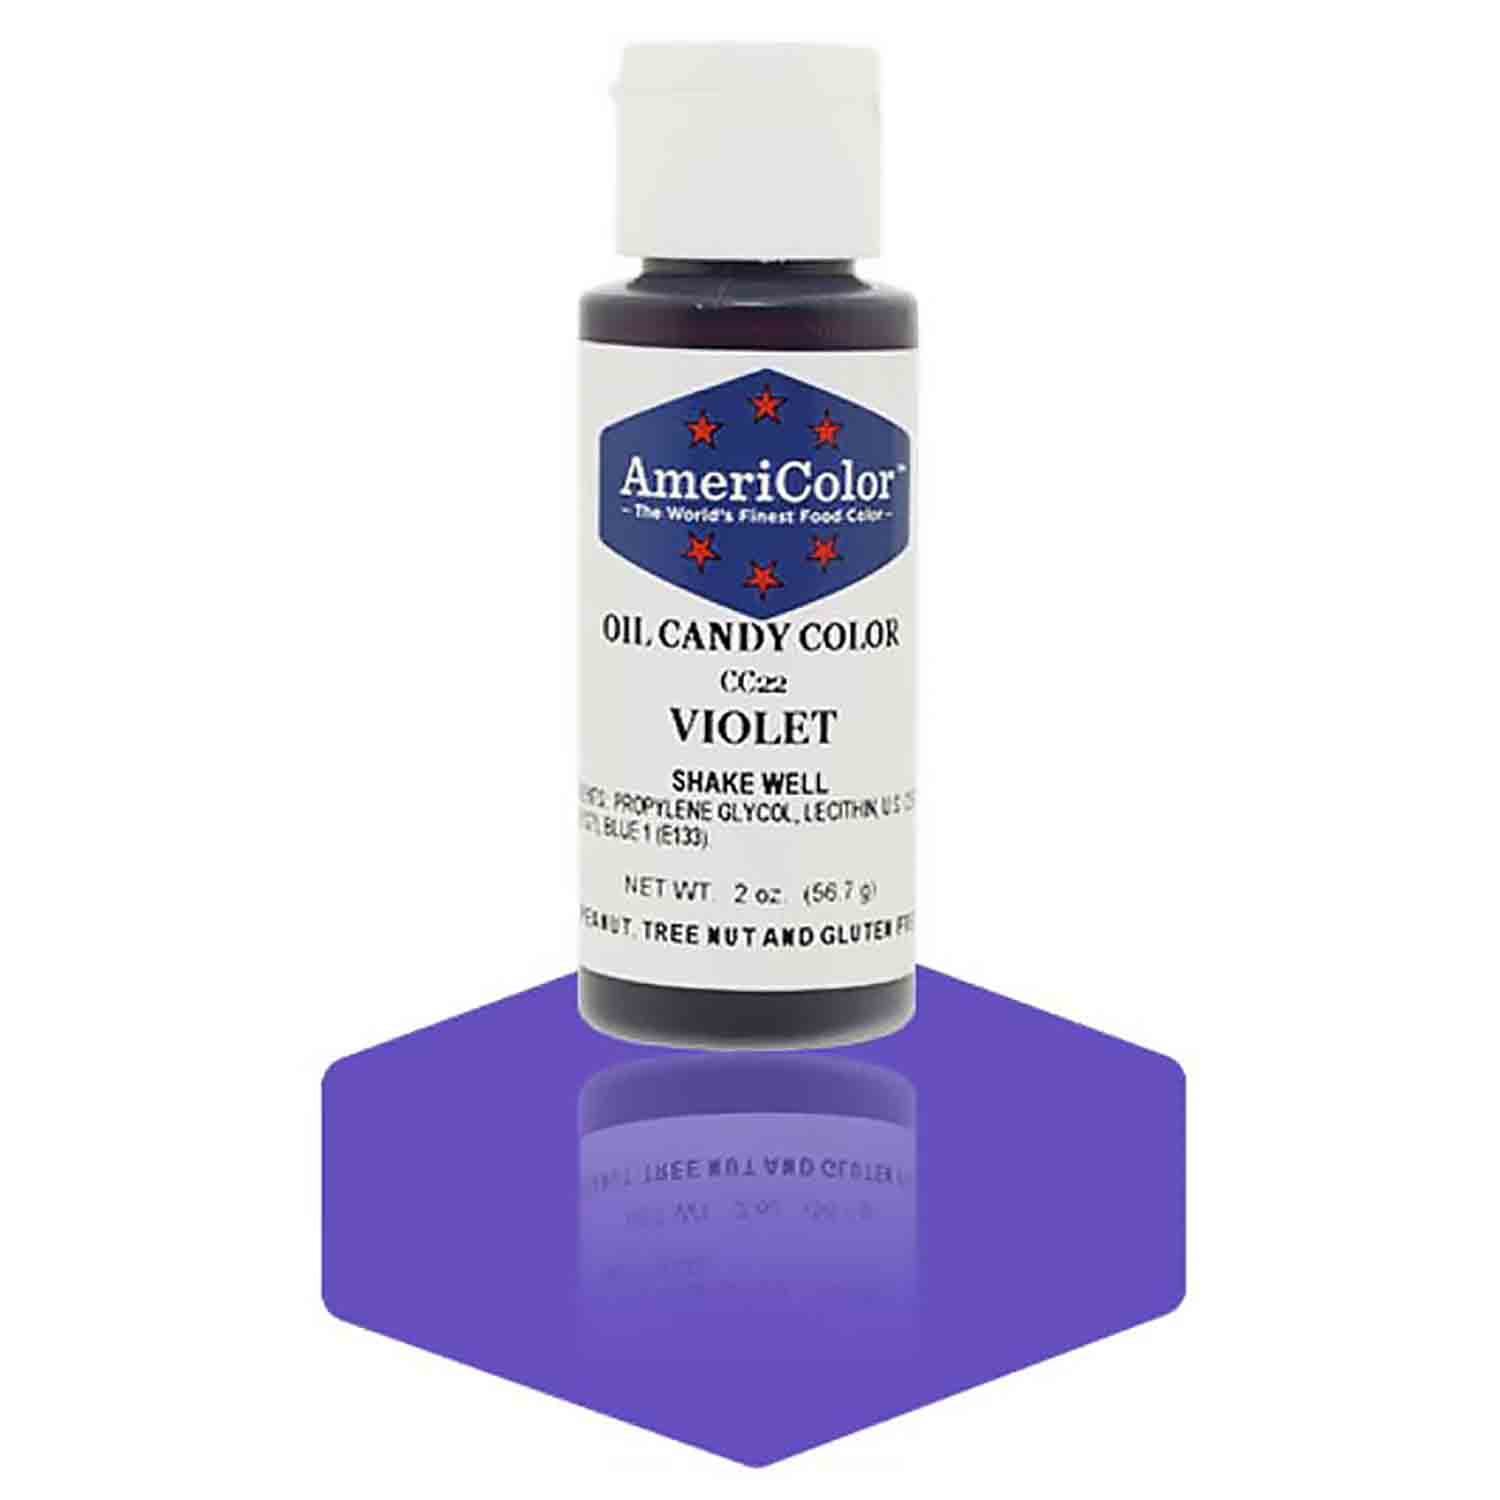 Violet Oil Candy Color